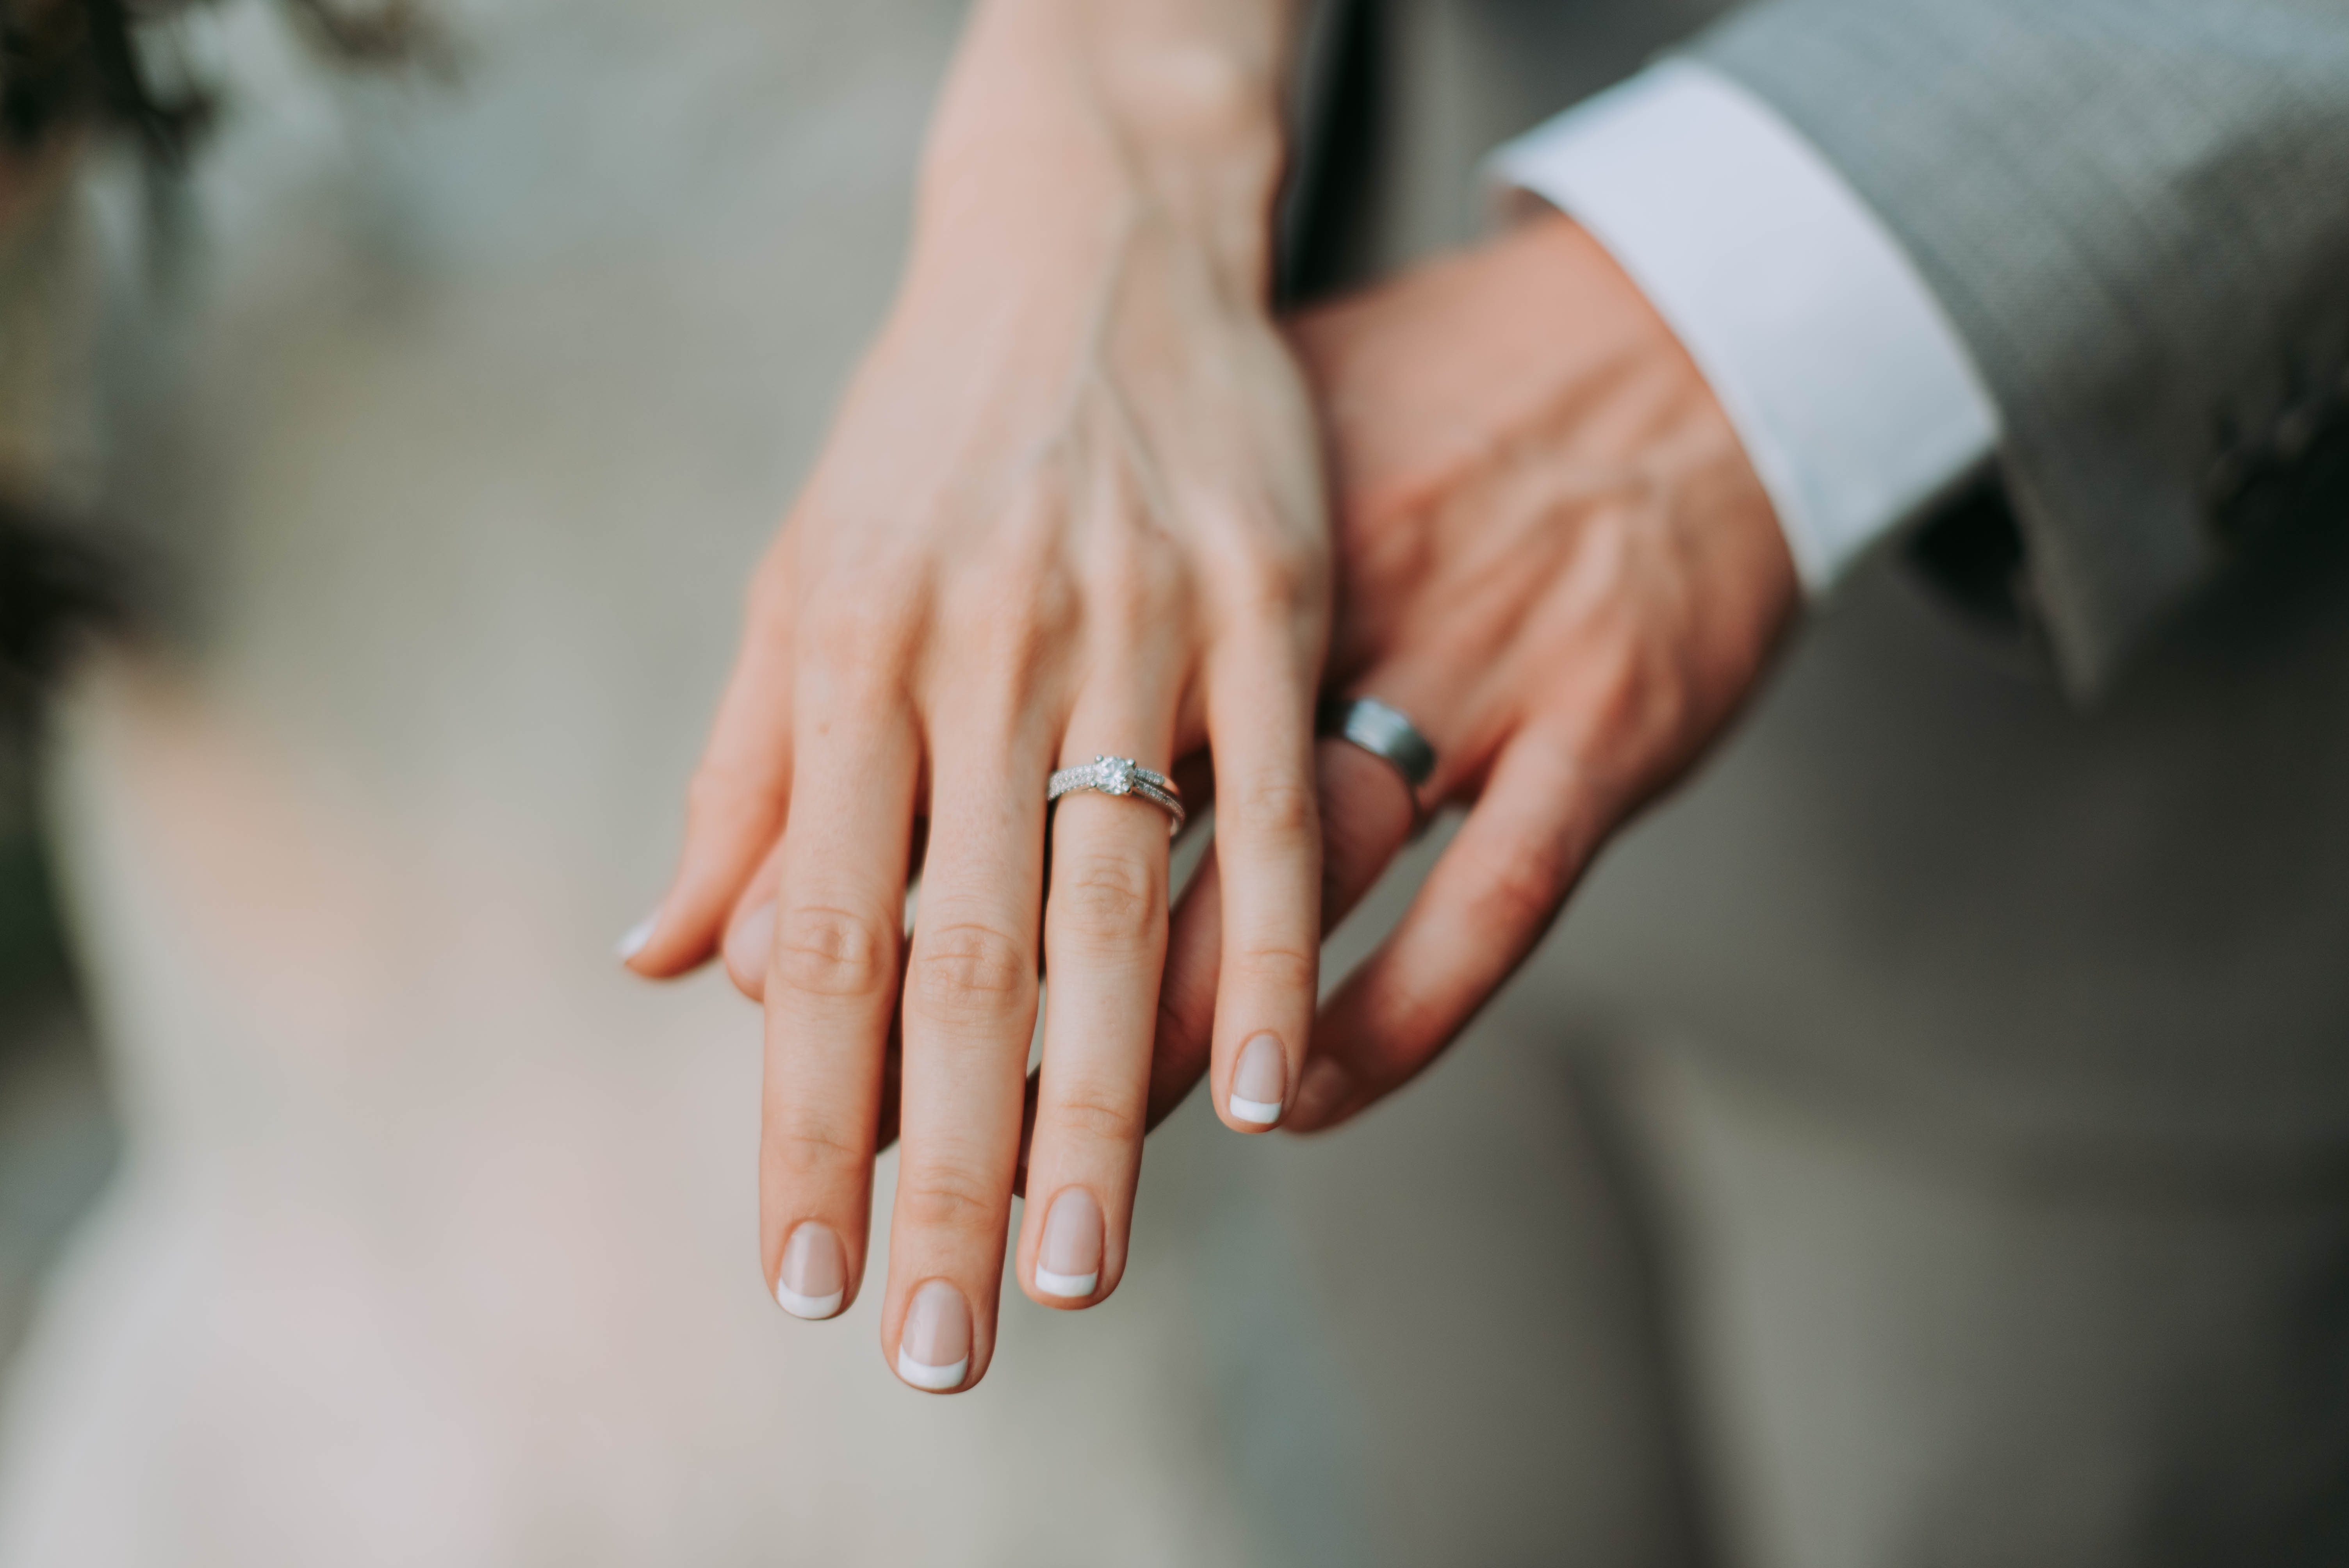 Супружество рк. Брак. Обручальное кольцо. Обручальное кольцо на пальце. Обручальные кольца на руках.